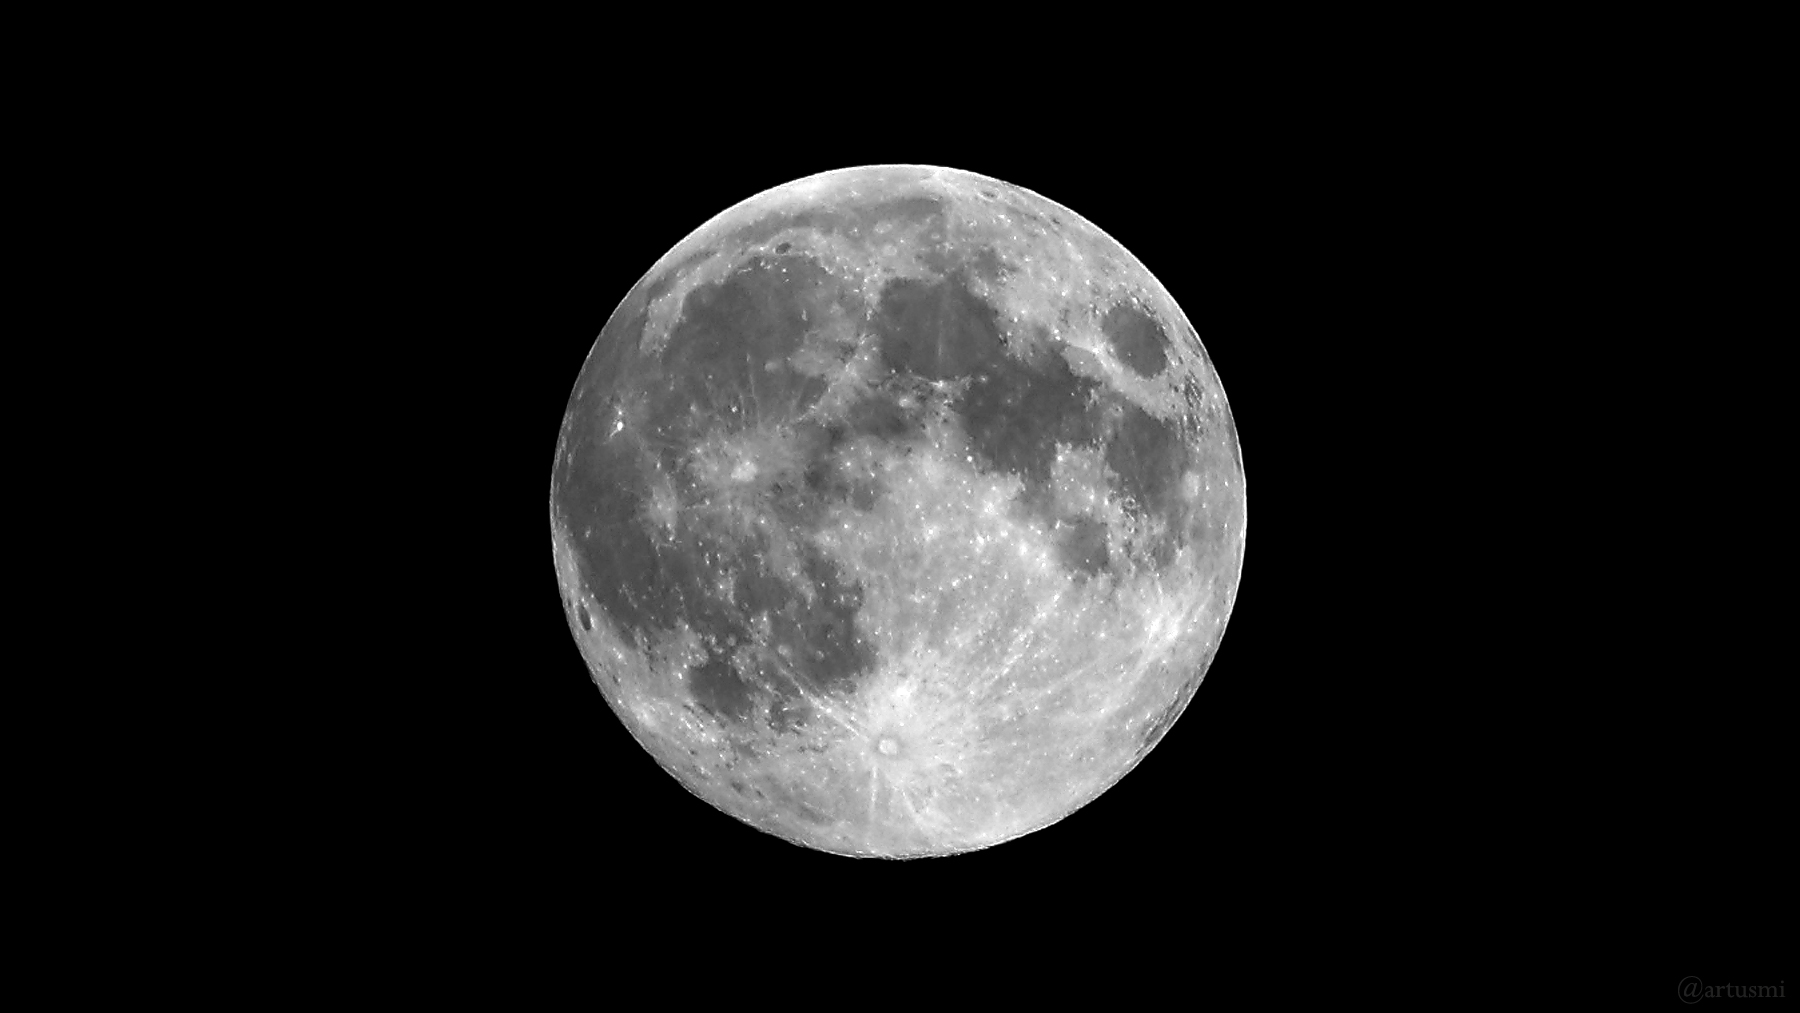 Mondmission Artemis I: Rückkehr vom Mond am 11. Dezember 2022 erwartet